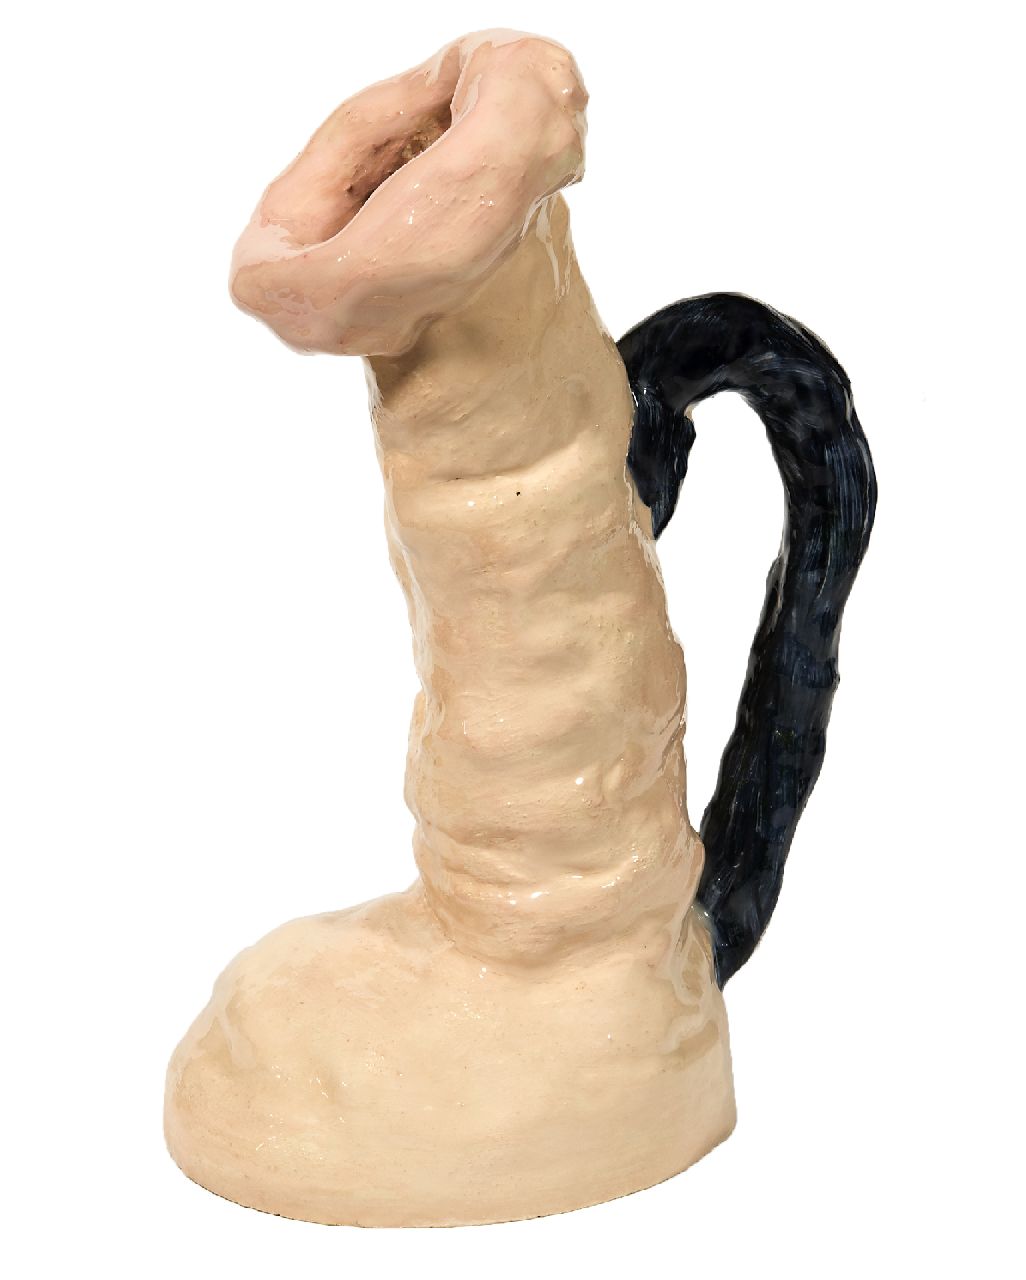 Toorn J.P. van den | Jacobus Petrus 'Joost' van den Toorn | Beelden en objecten te koop aangeboden | Sculptuur in de vorm van een schenkkan, keramiek 30,0 x 17,0 cm, gesigneerd op zijkant basis en gedateerd 2009